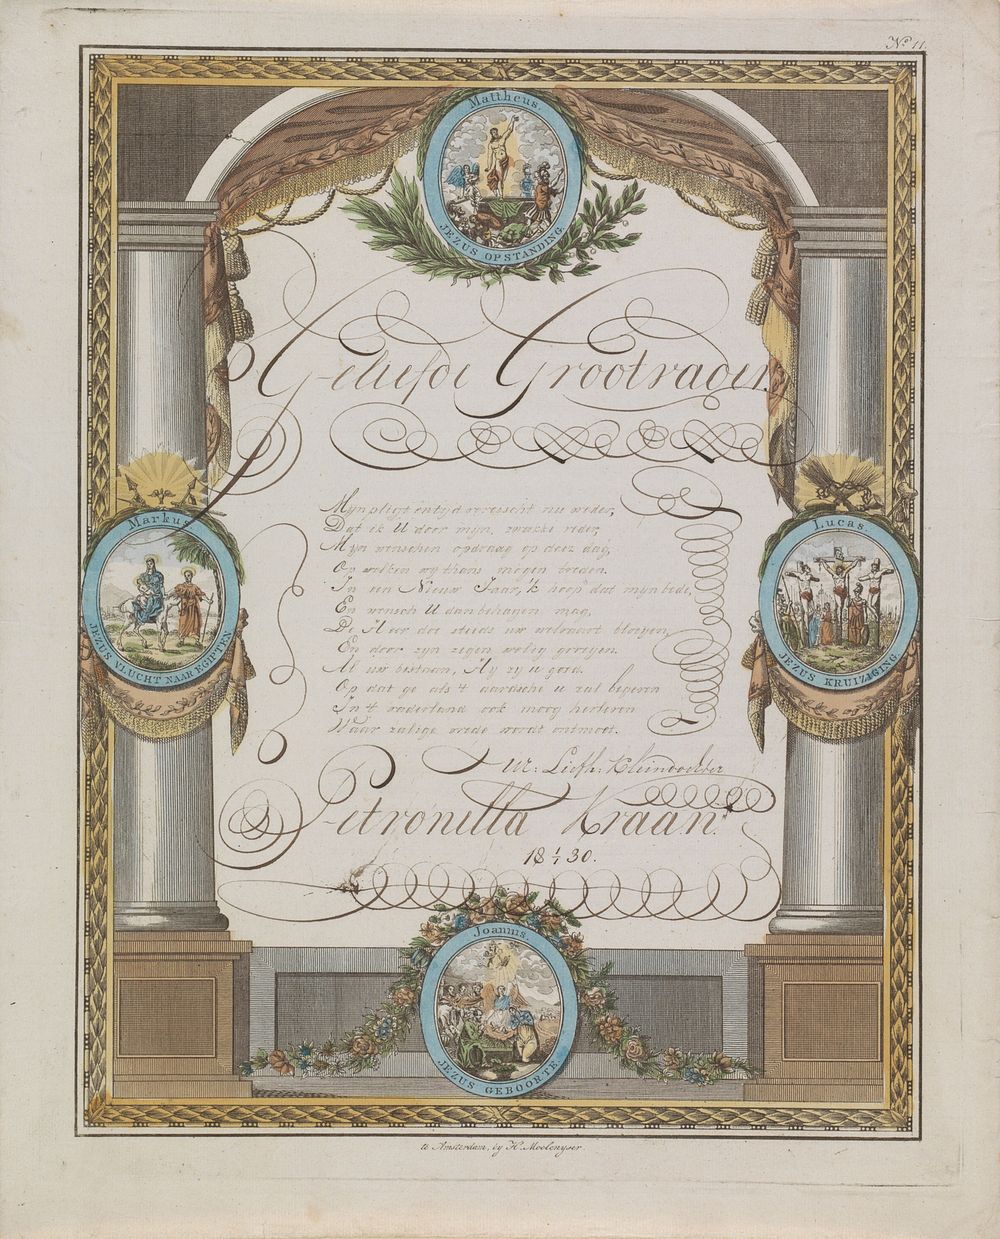 Wensbrief met voorstellingen uit het Nieuwe Testament (1830) by Hendrik Moolenyzer and anonymous